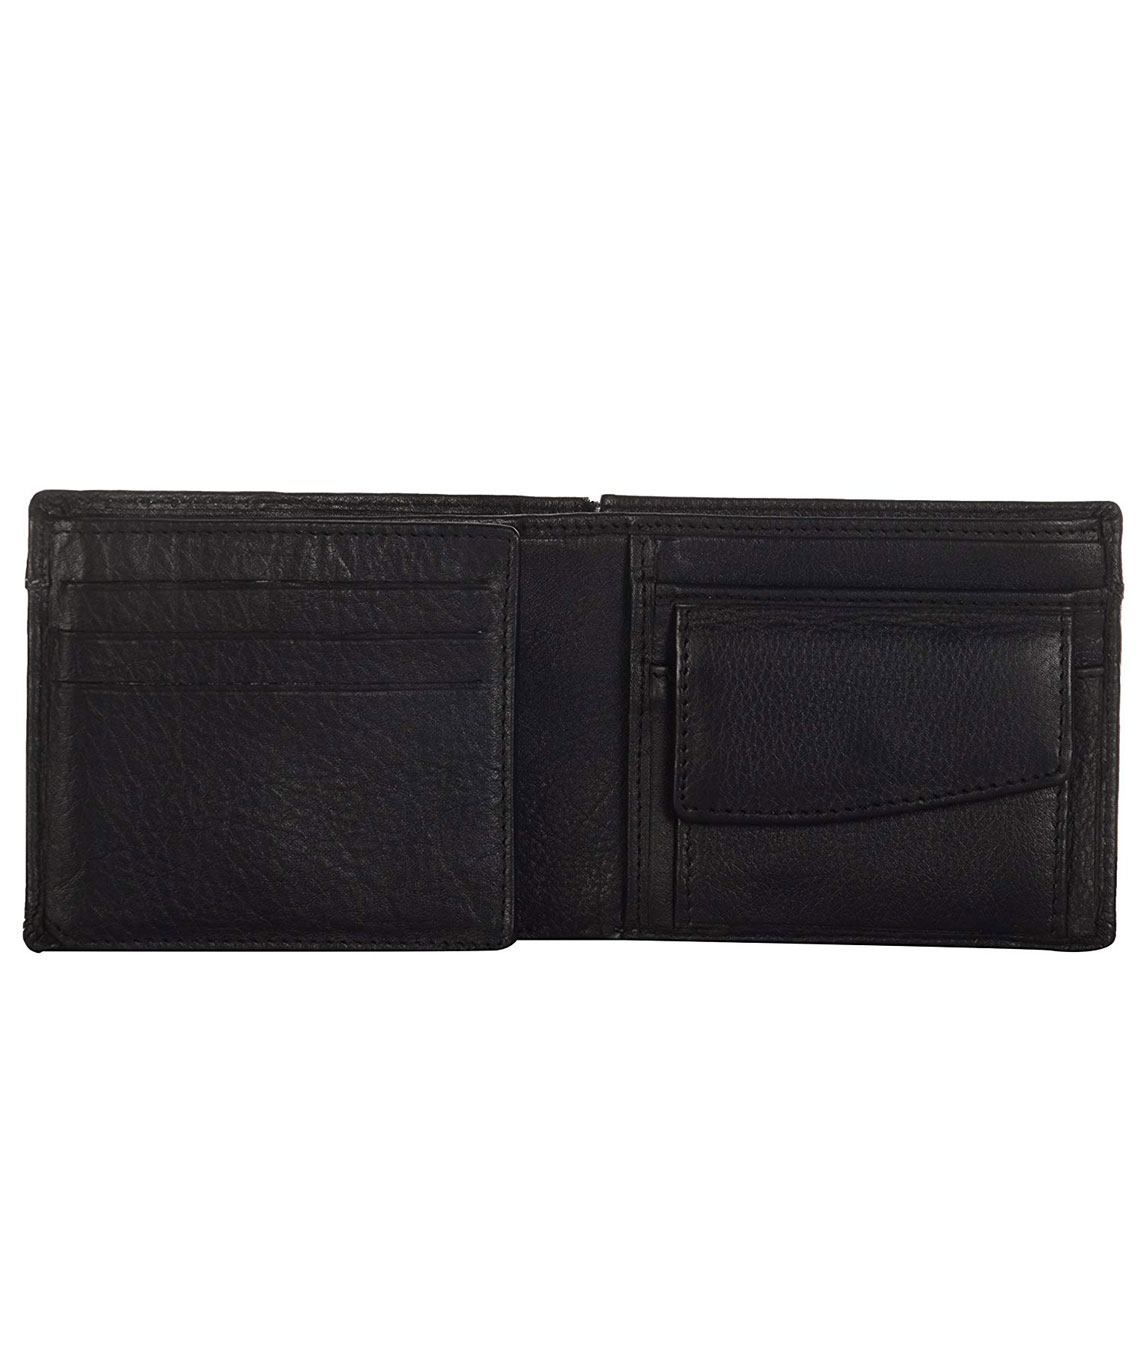 Mens Wallet PU Leather Black Bi-Fold Gents Purse at Best Price in Delhi -  Manufacturer,Supplier,Delhi NCR